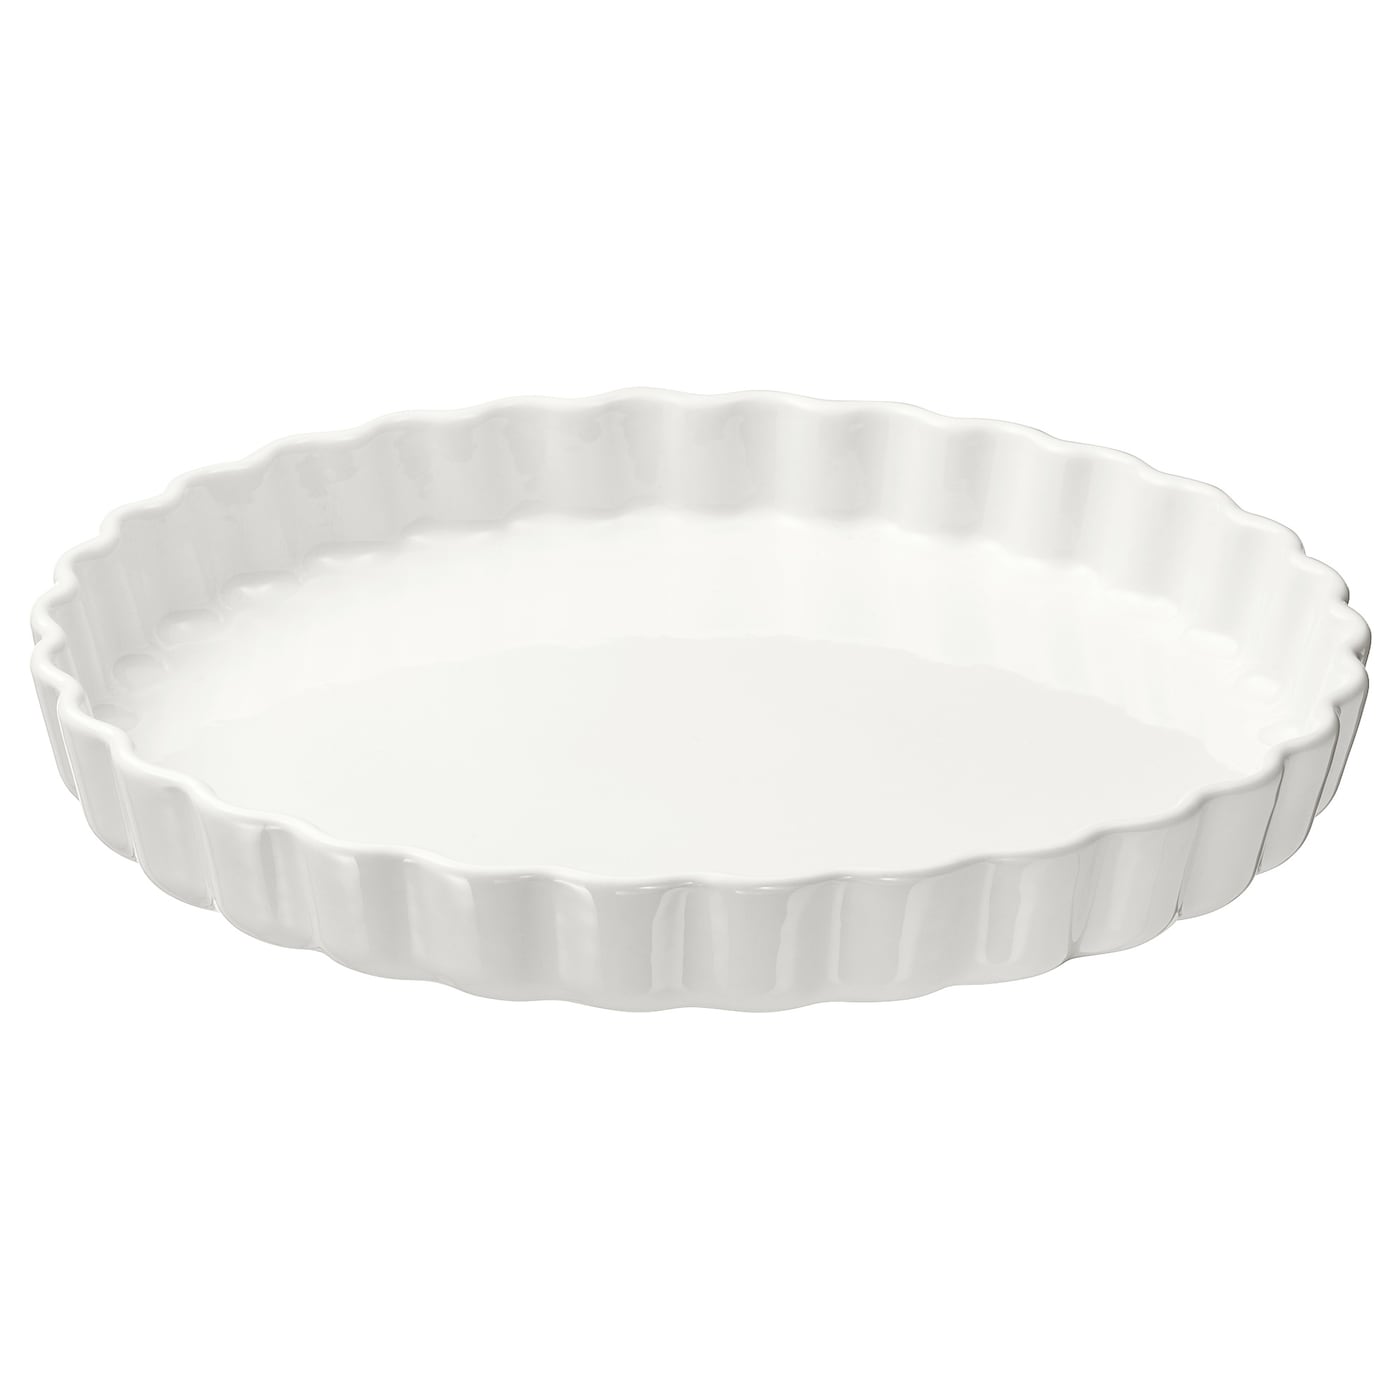 VARDAGEN ВАРДАГЕН Форма для открытого пирога, белый с оттенком, 32 см IKEA форма для выпечки ikea vardagen 38x29 серебристый